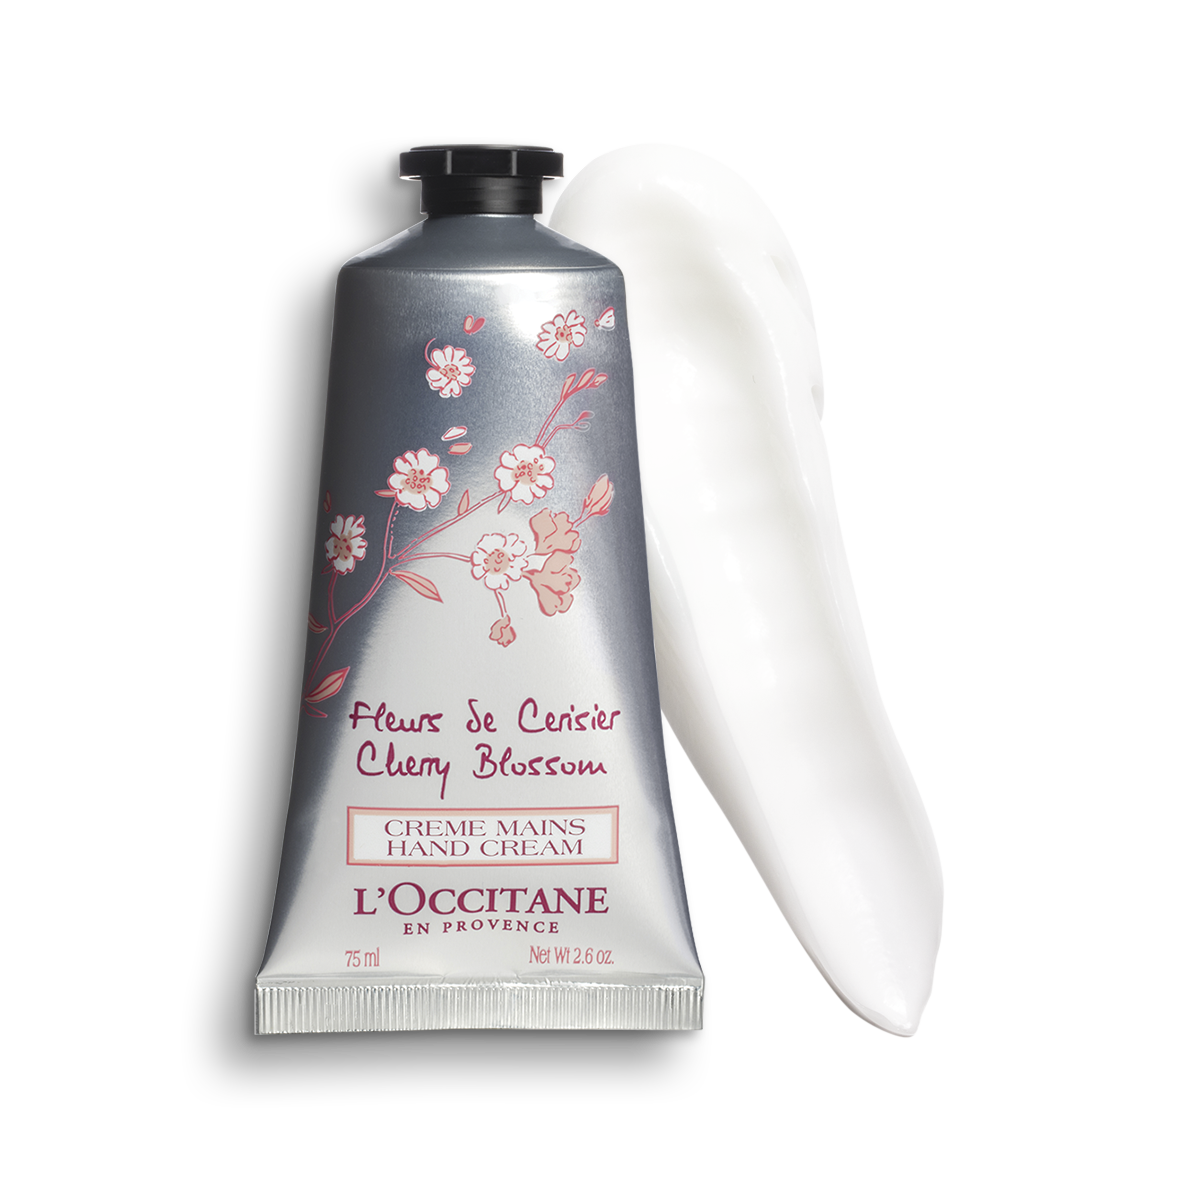 L'Occitane Creme mains hand Cream. Крем l'Occitane fleurs de cerisier. L'Occitane en Provence крем. Крем для рук 75 ml от l'Occitane.